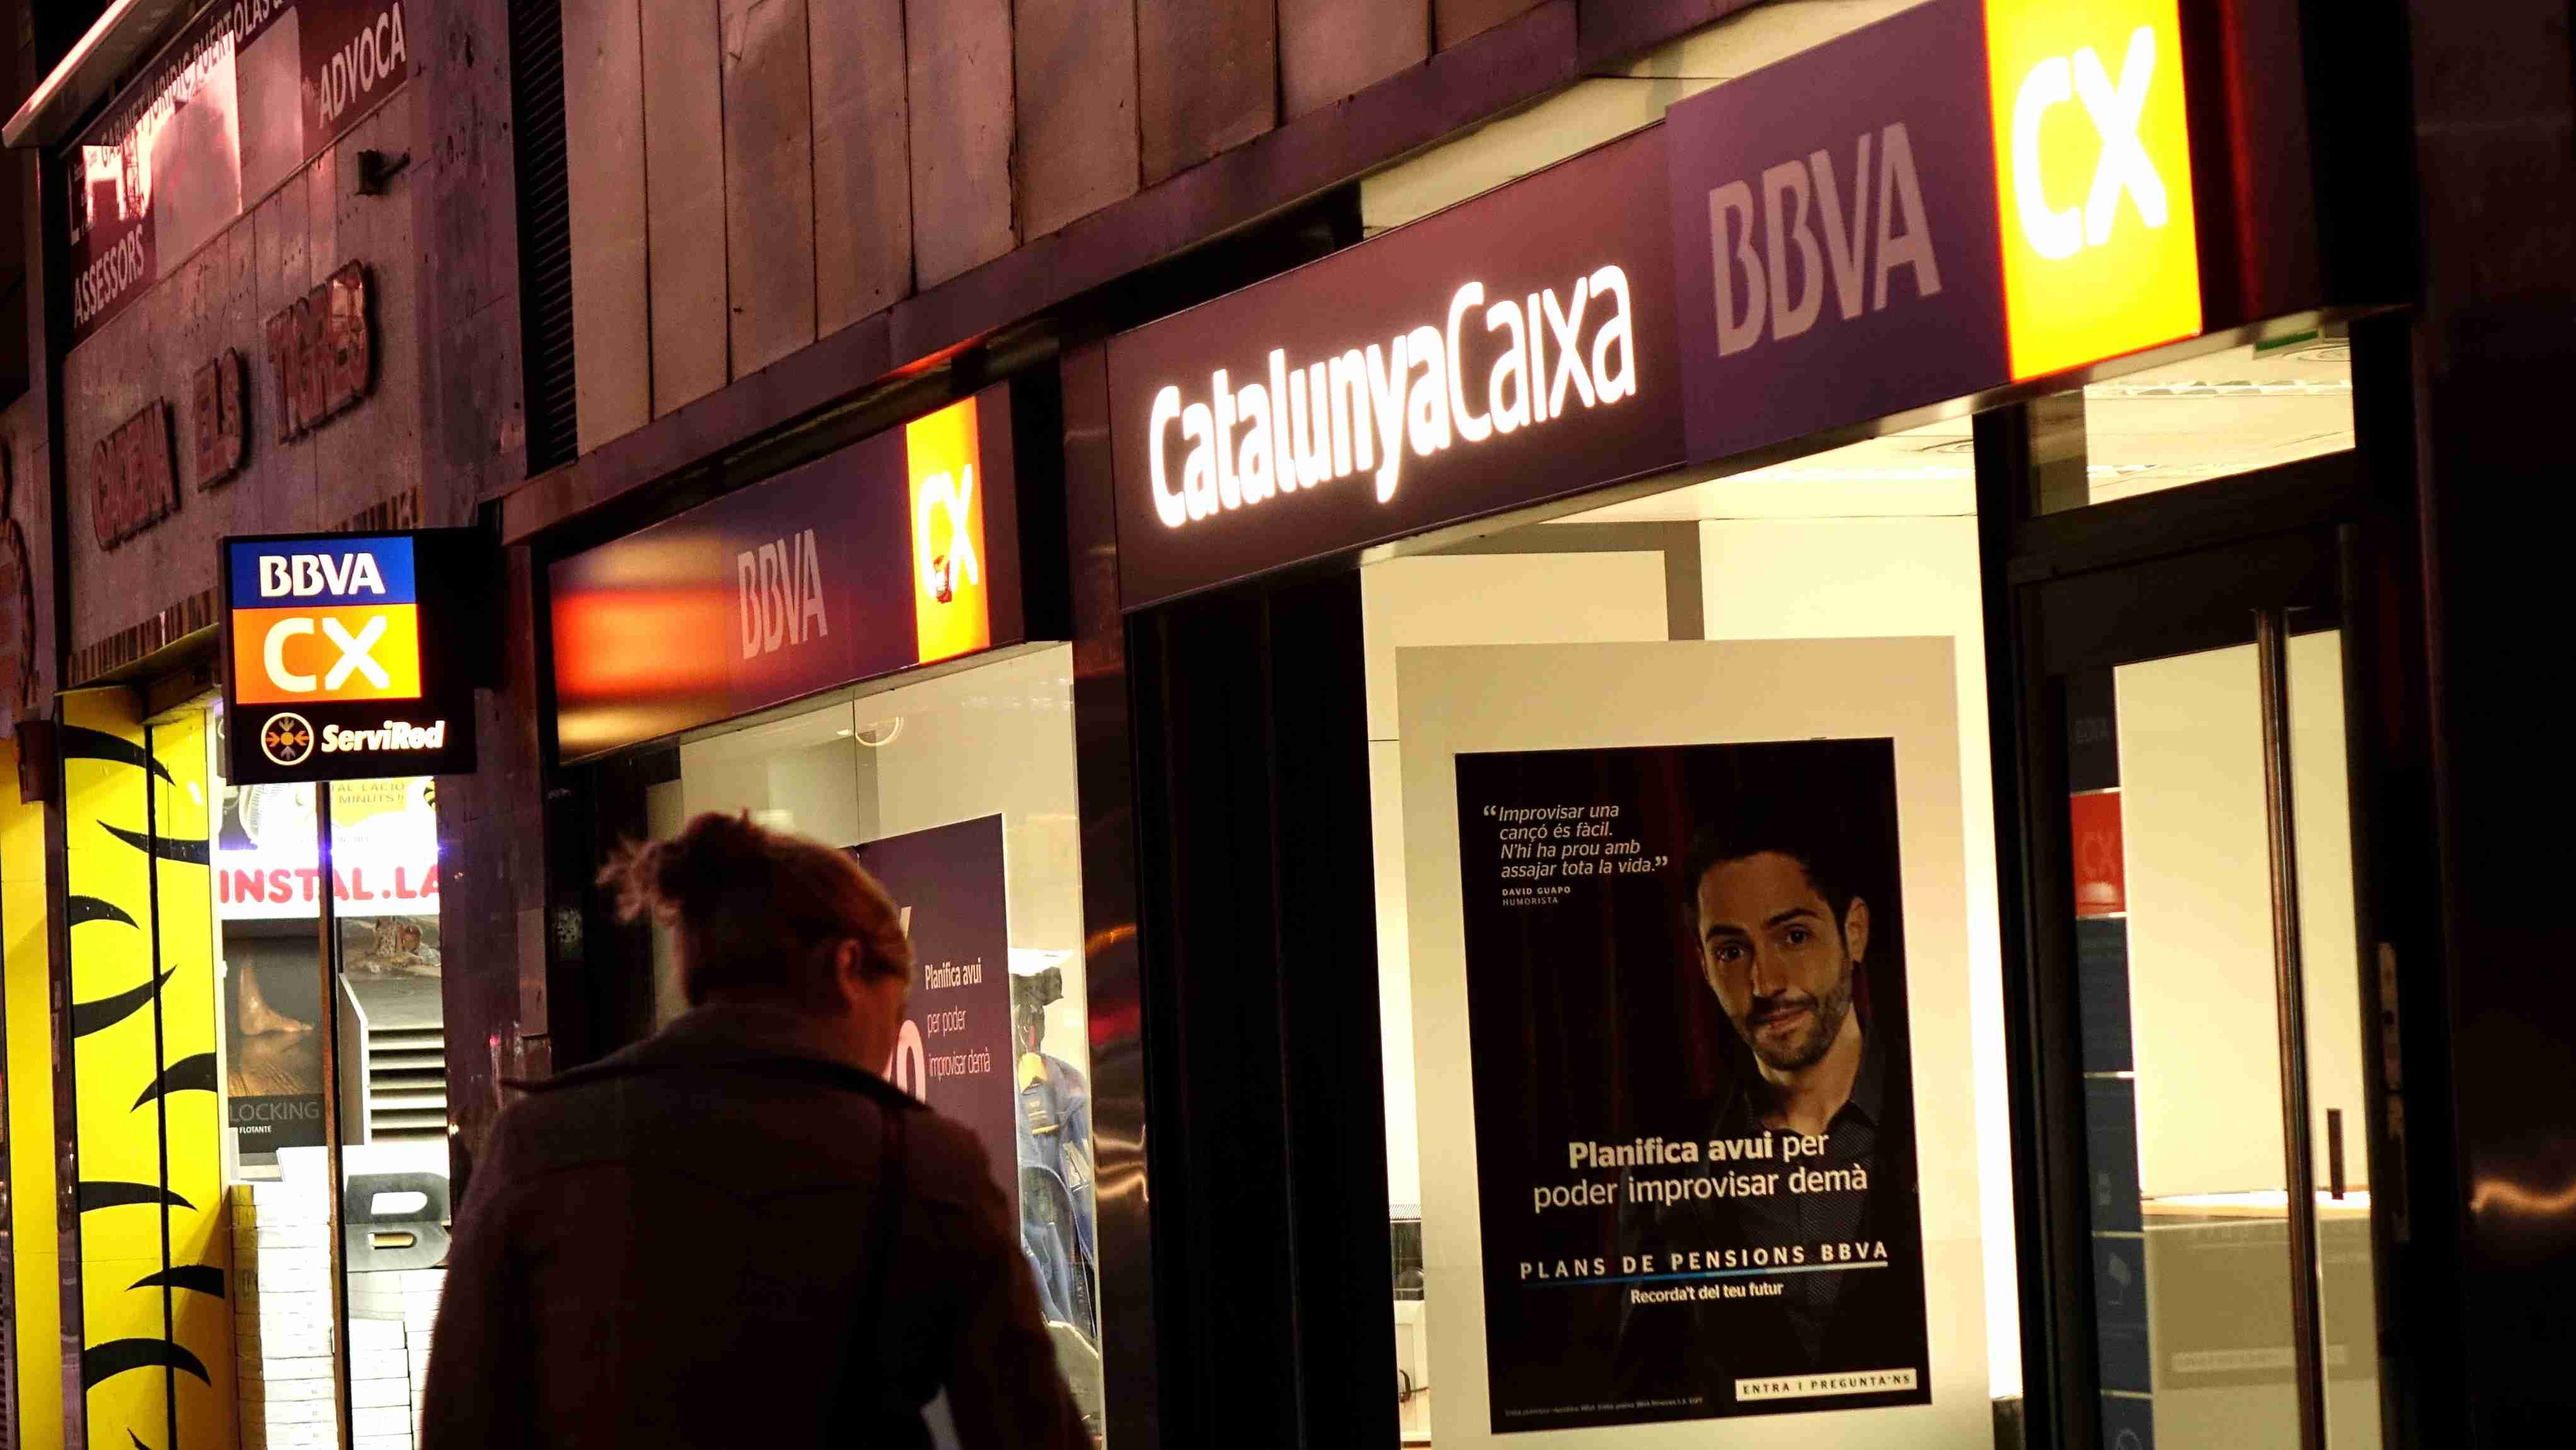 BBVA i Catalunya Caixa: una fusió que no convenç els clients